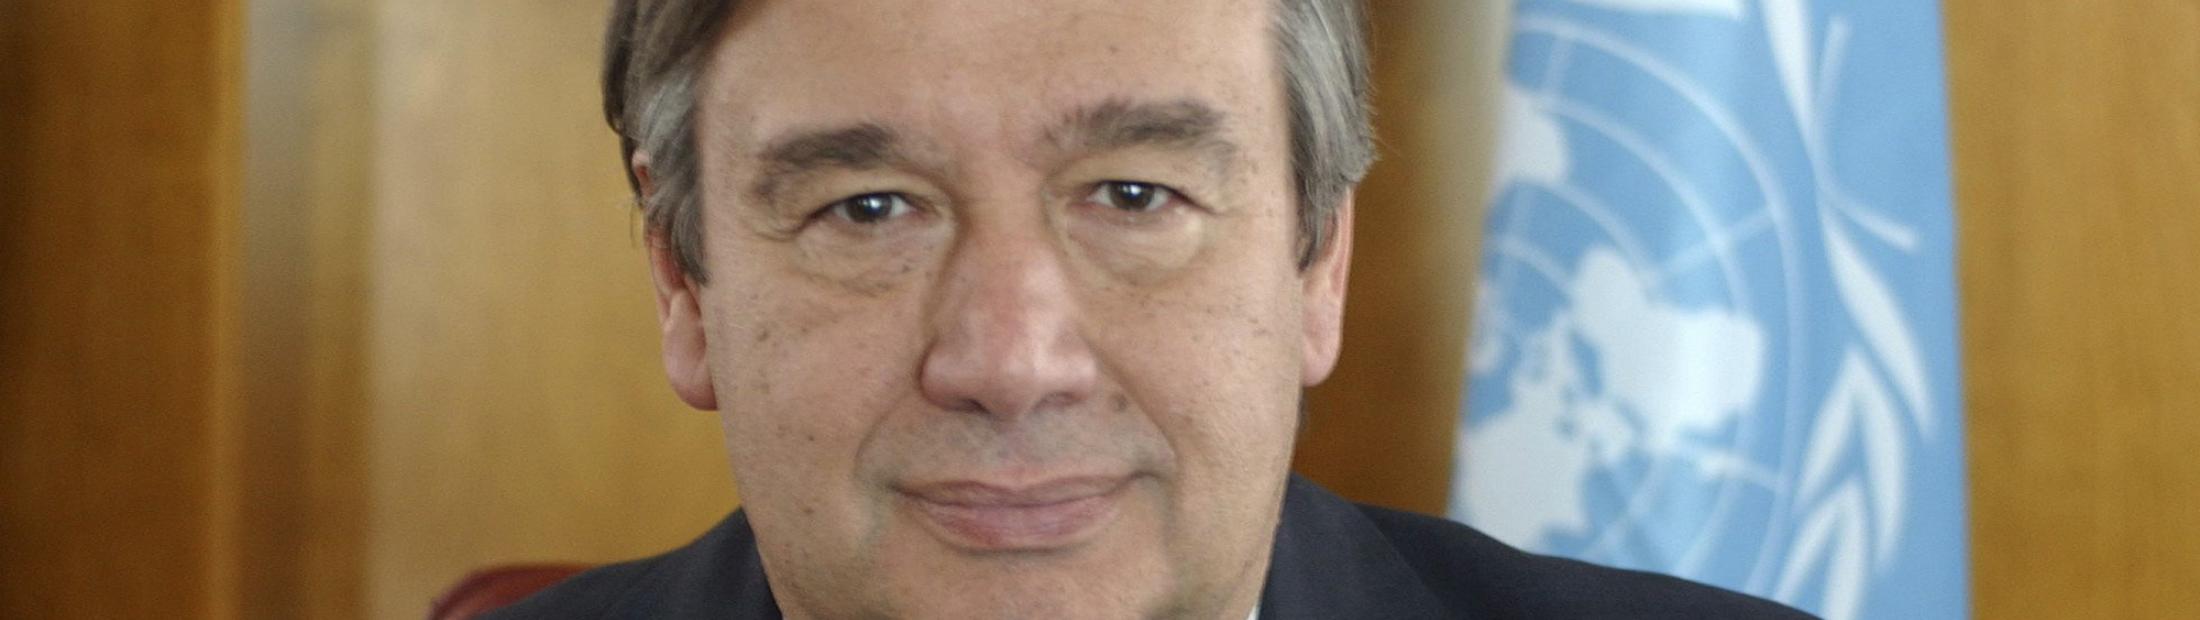 El Alto Comisionado António Guterres denuncia la “catástrofe humanitaria” en la República Centroafricana